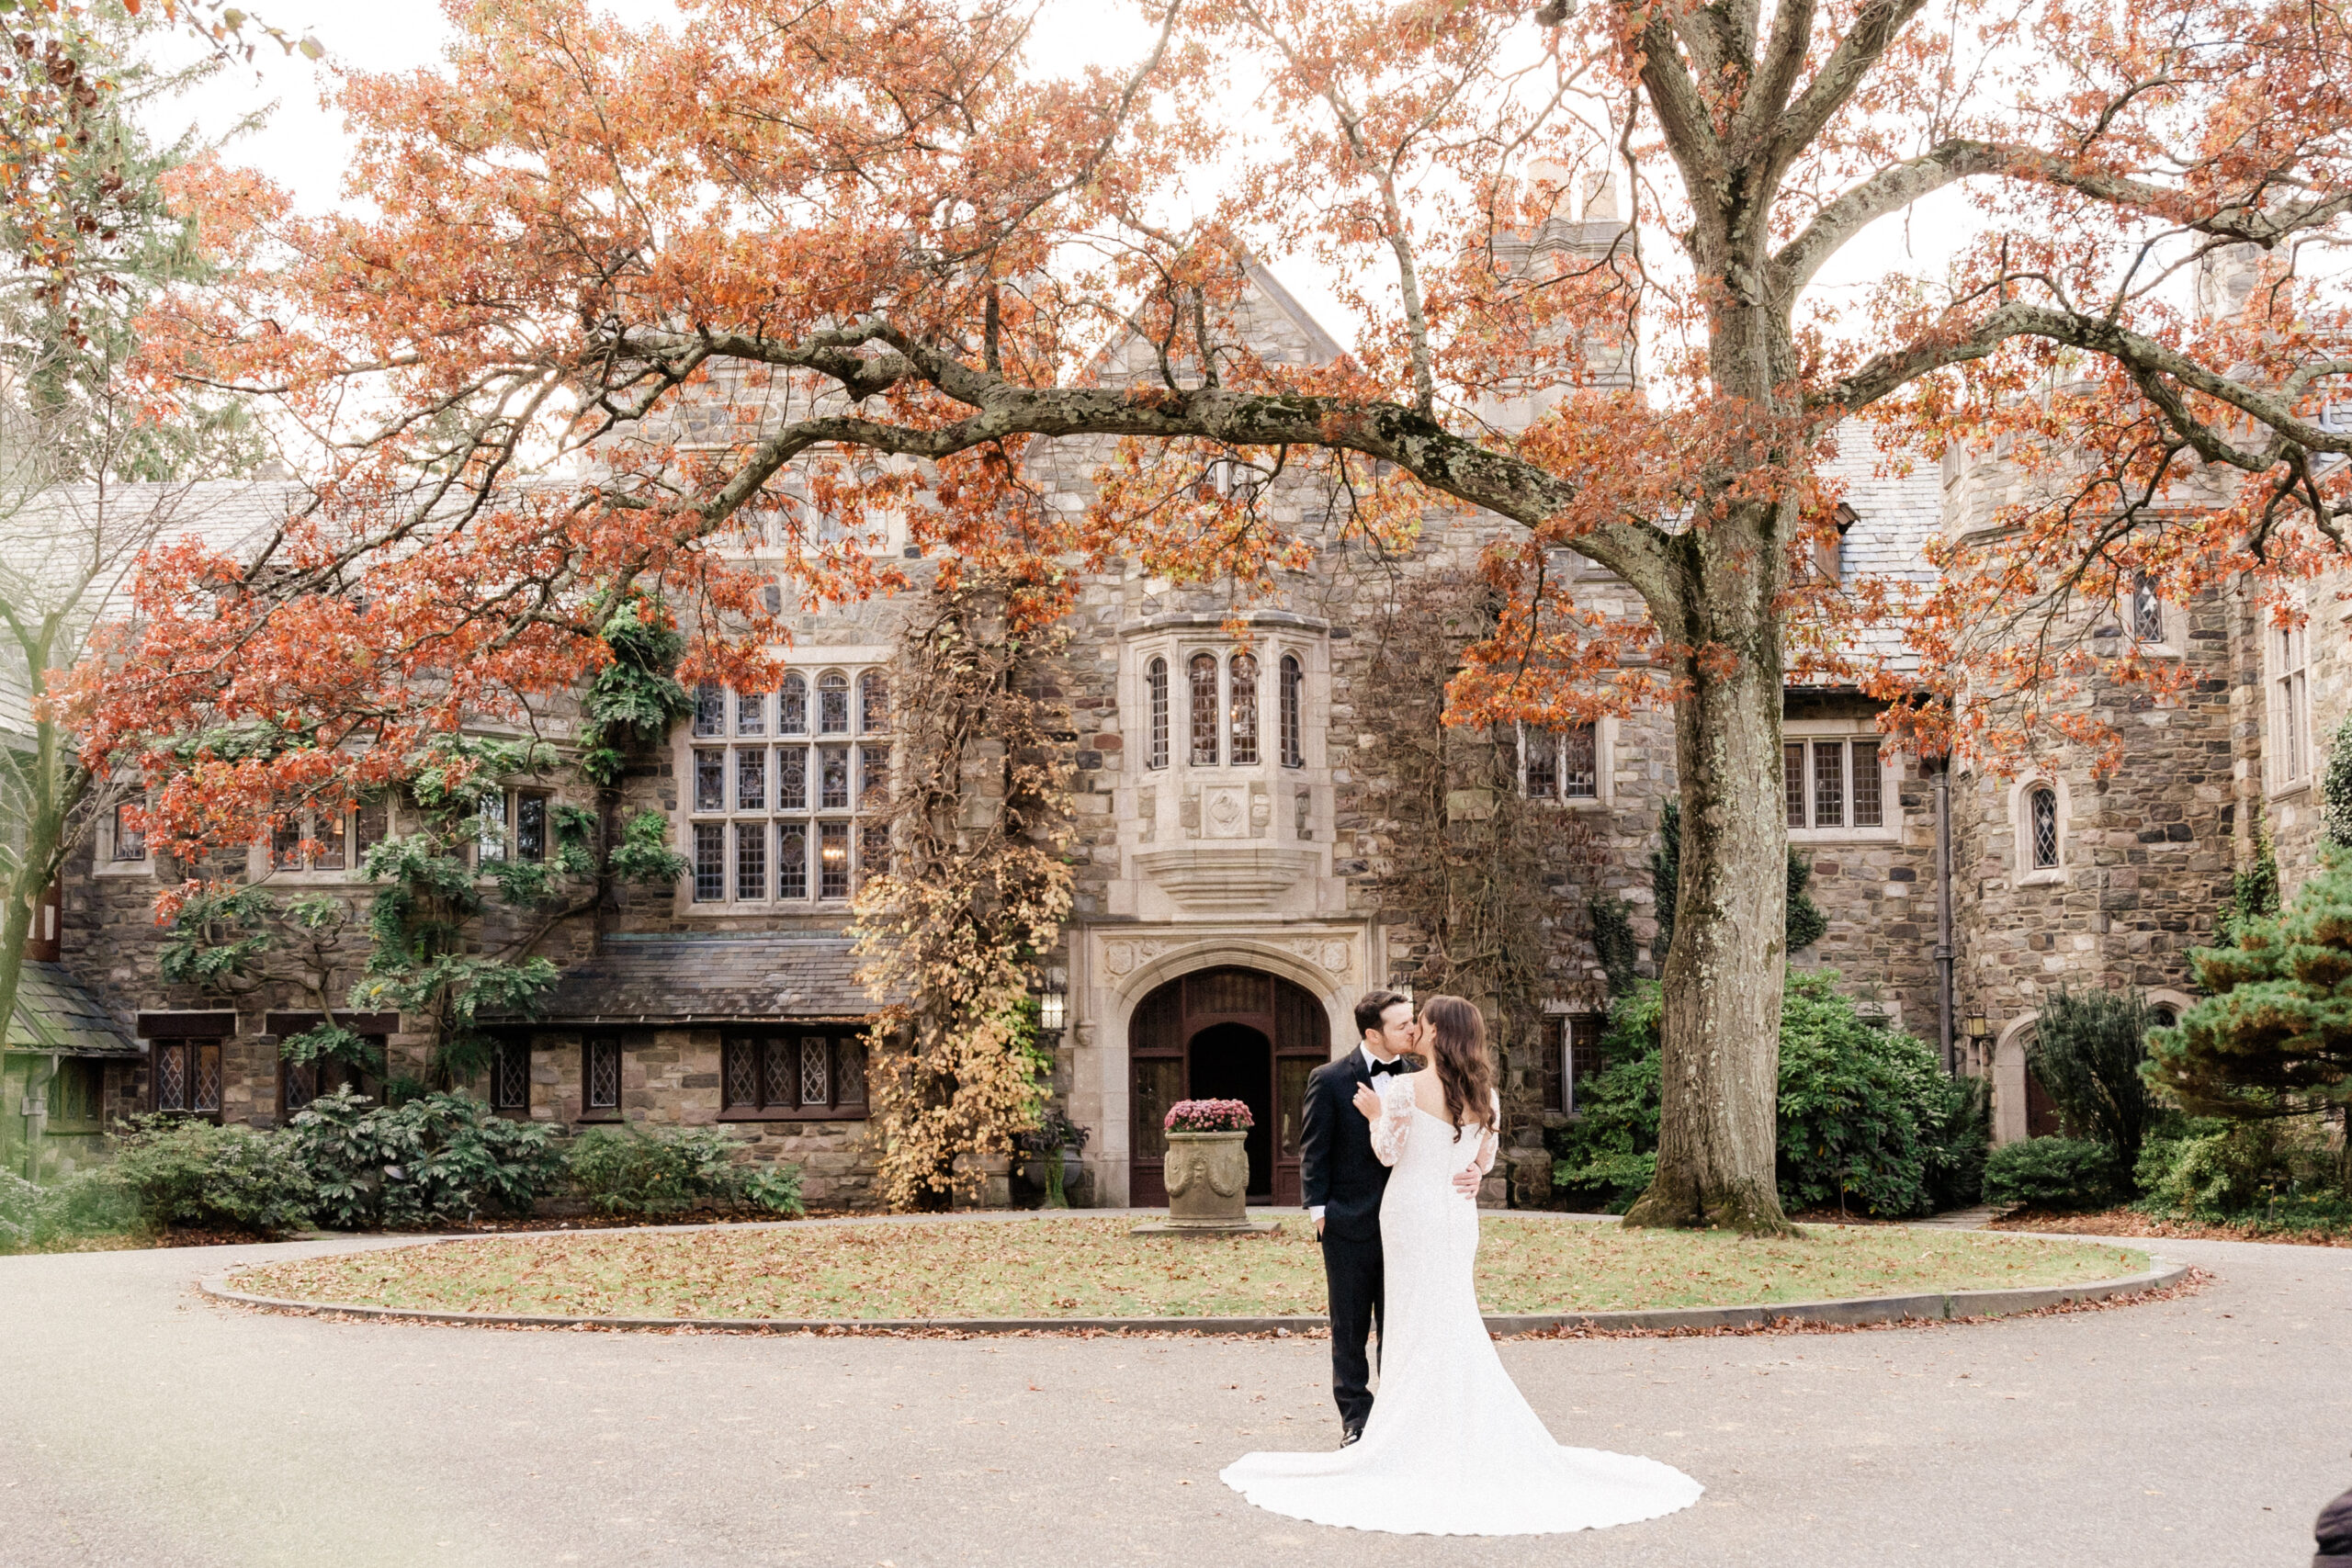 Fall wedding at NJ skylands Manor at the Botanical Gardens